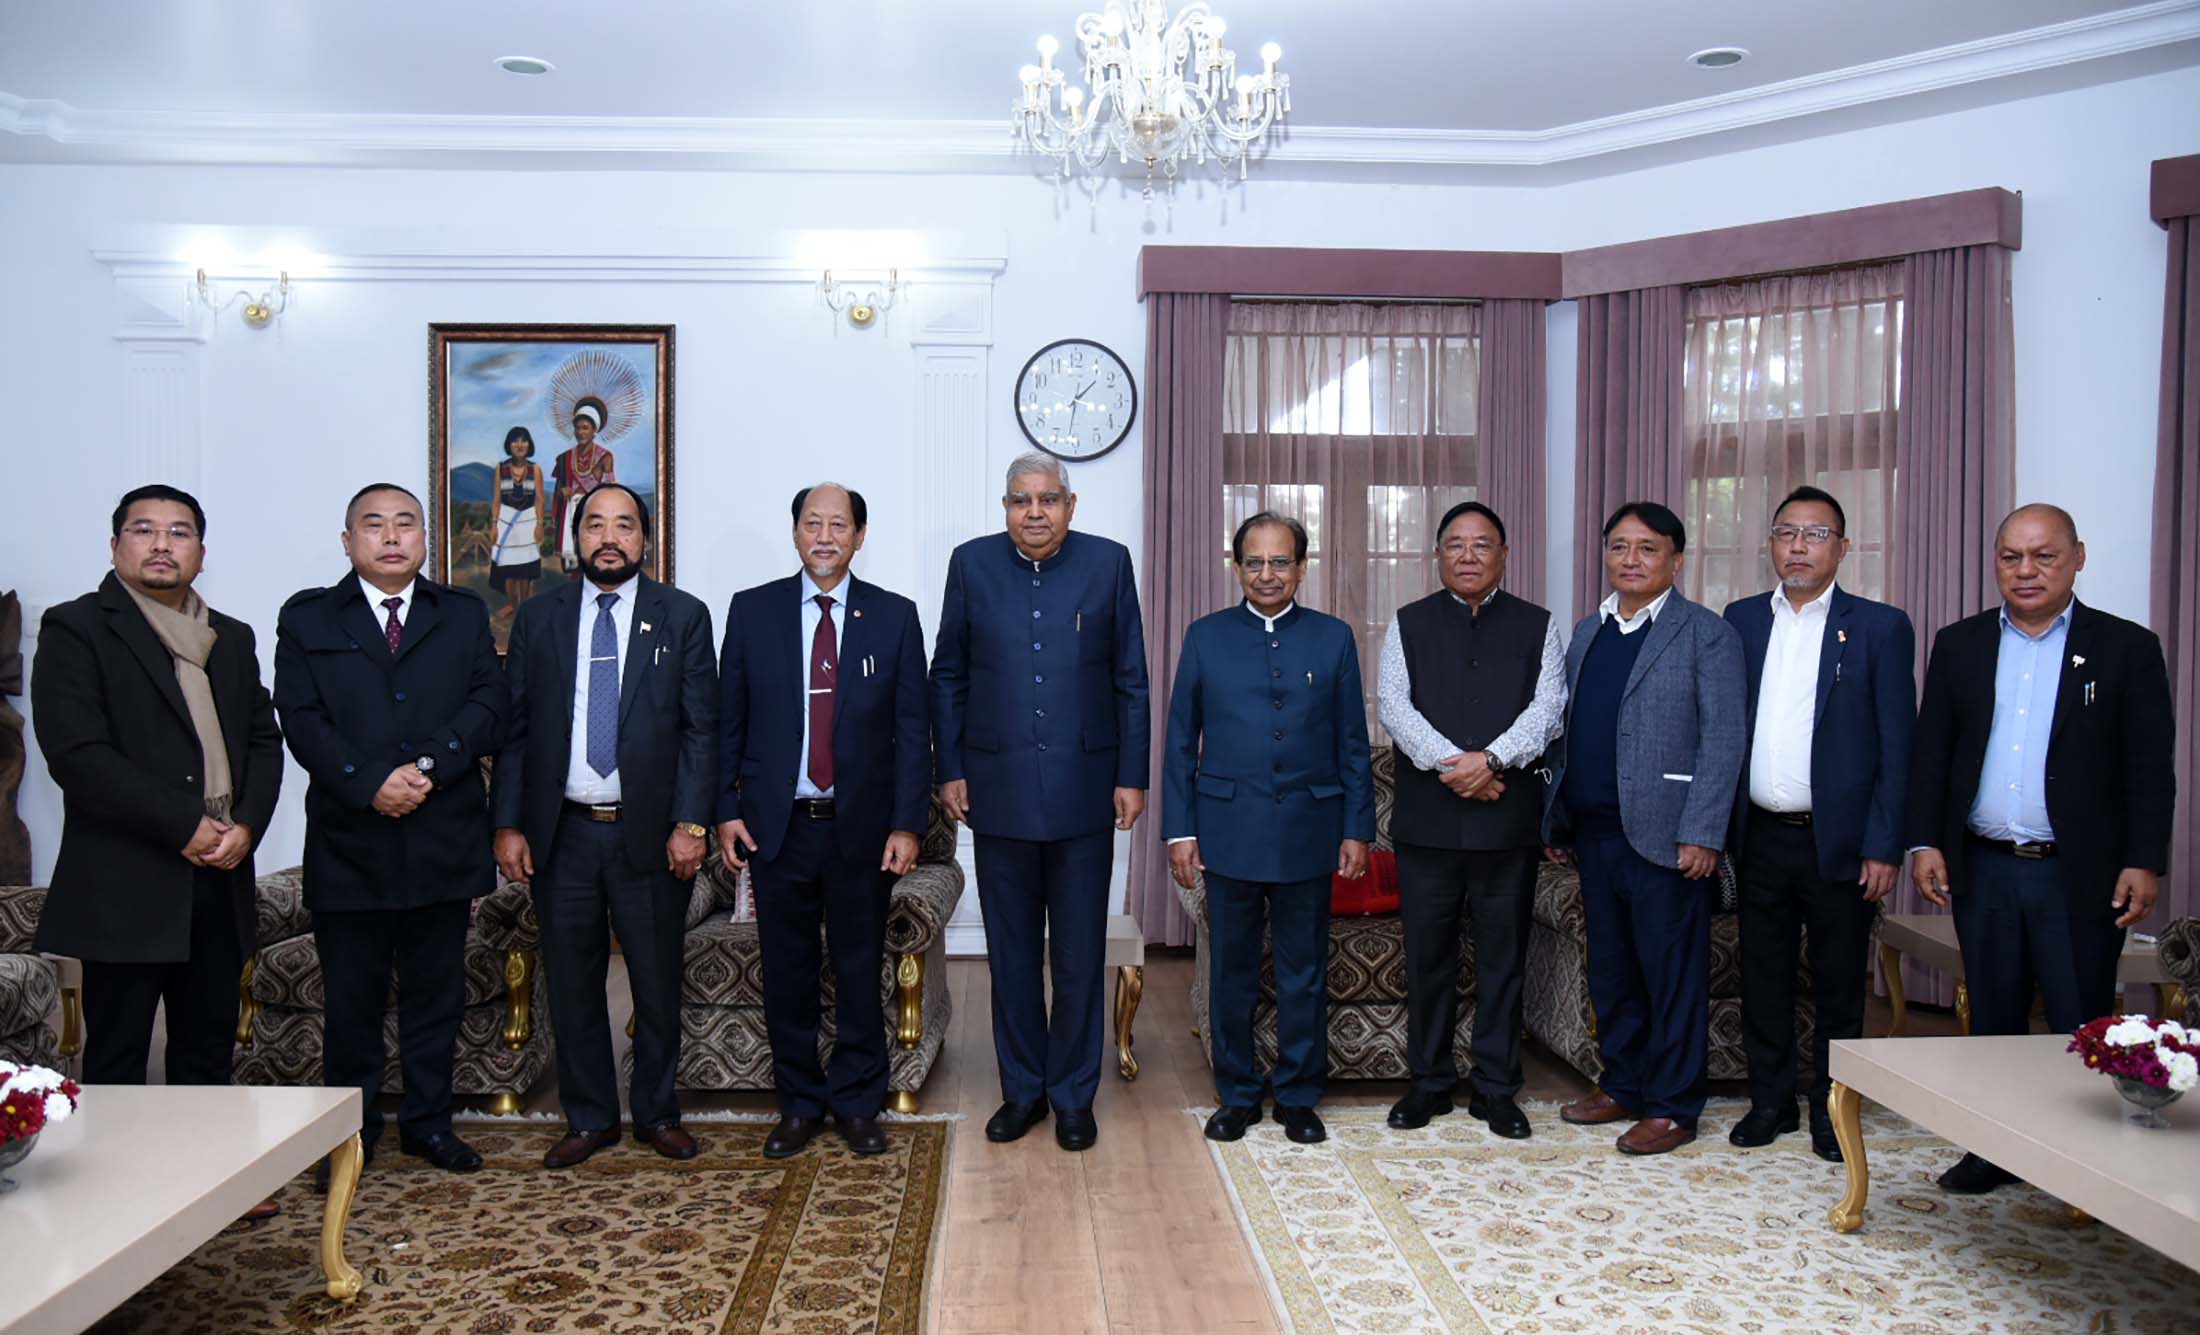 1 दिसंबर, 2022 को राजभवन, कोहिमा में नागालैंड के राज्यपाल, श्री जगदीश मुखी, नागालैंड के मुख्यमंत्री, श्री नेफियू रियो और नागालैंड की मंत्रिपरिषद के साथ बातचीत करते हुए भारत के उपराष्ट्रपति श्री जगदीप धनखड़।